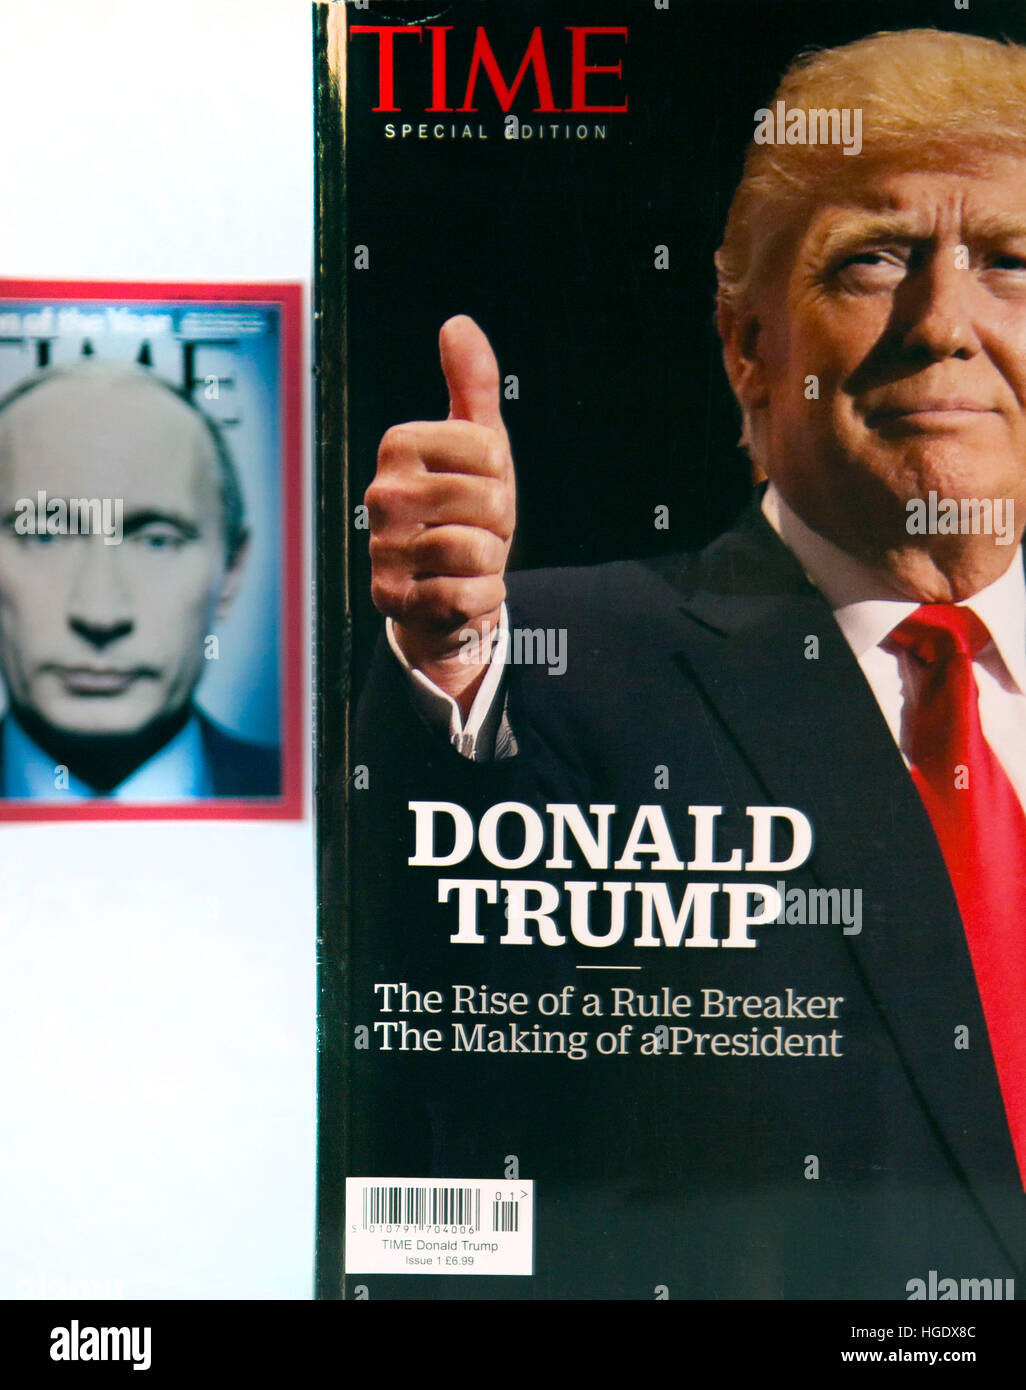 Donald Trump et Vladimir Poutine ont tous deux été Time magazine Personne  de l'année Photo Stock - Alamy